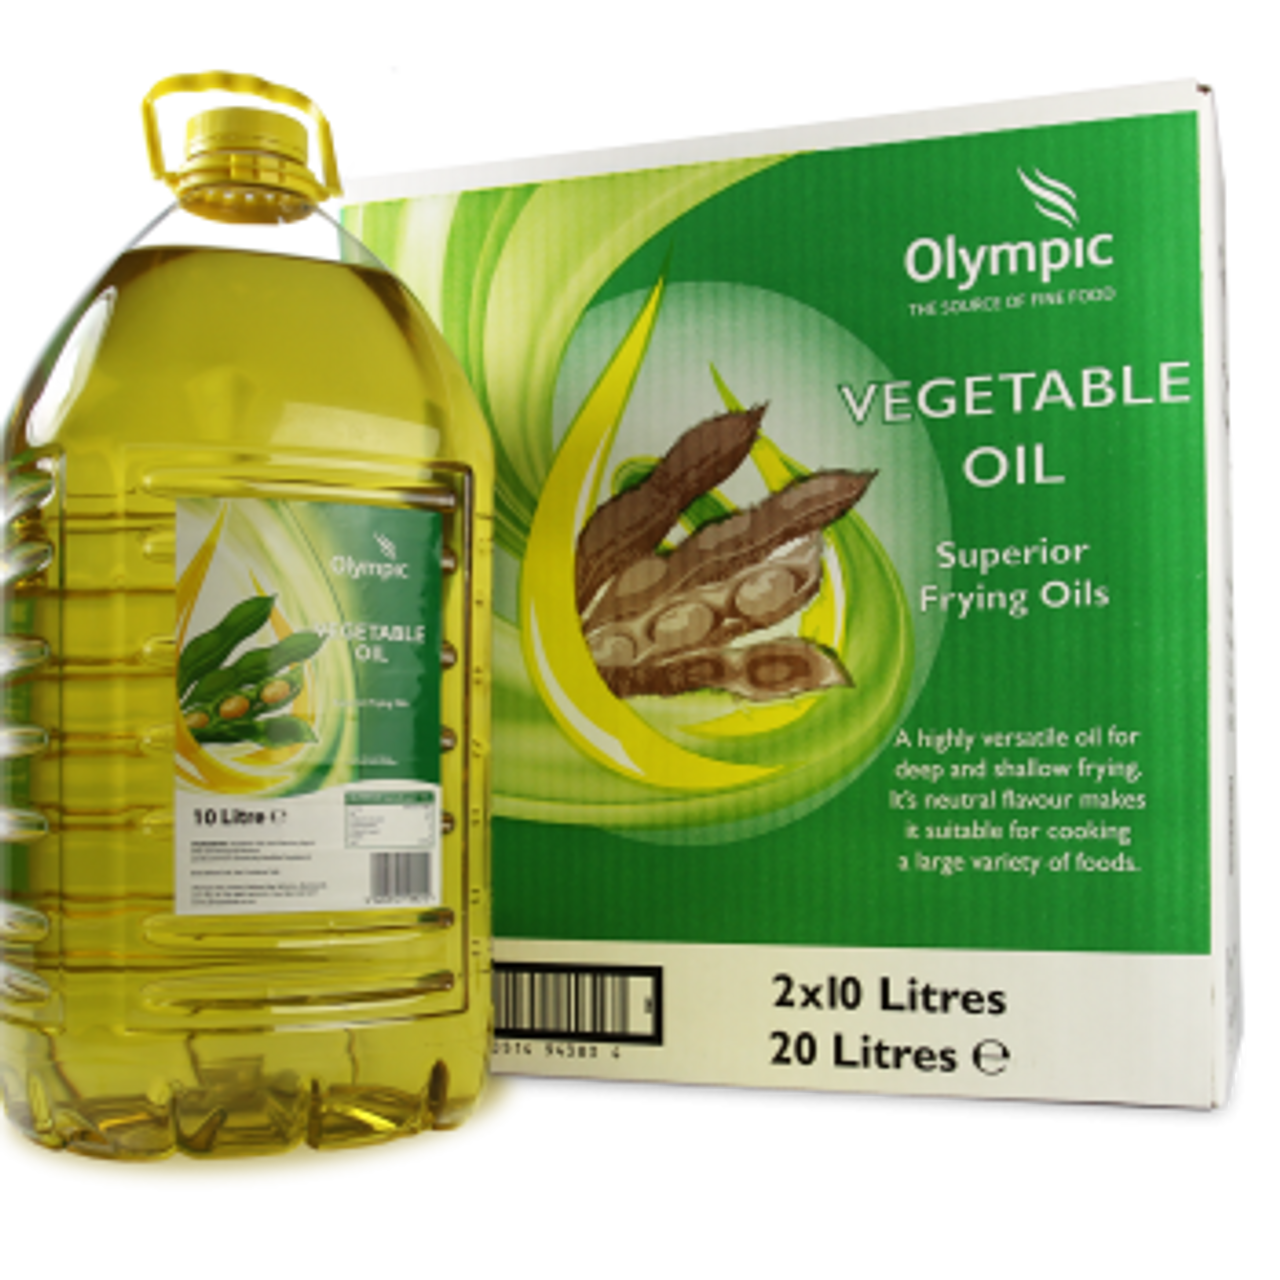 Olympic Vegetable Oil 2 x 10ltr 